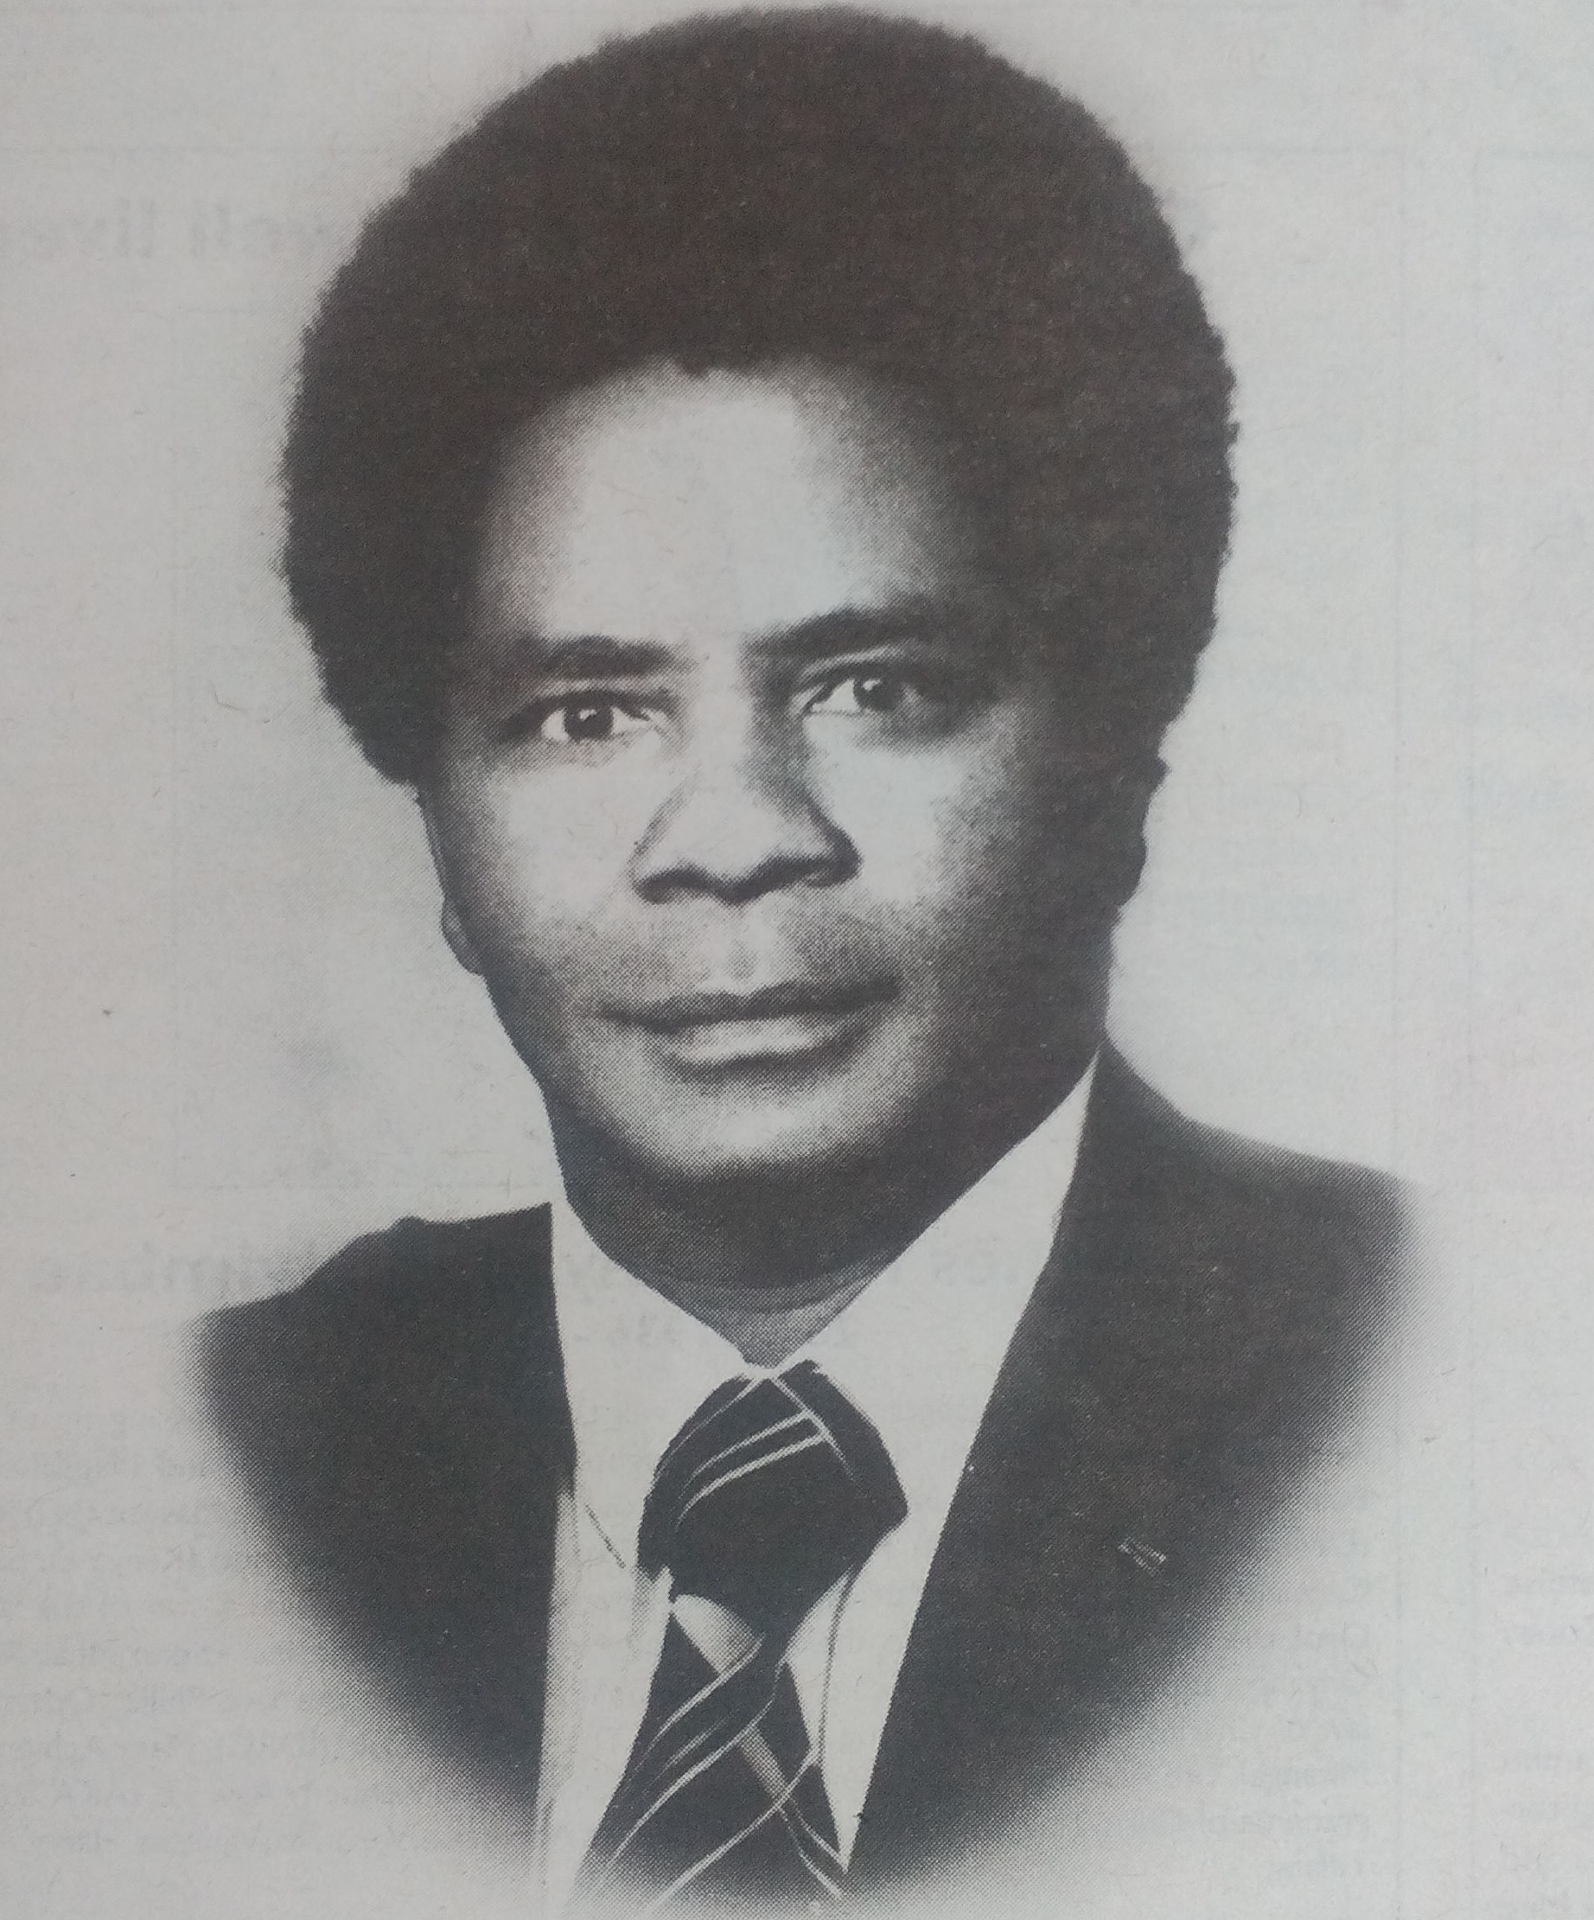 Obituary Image of Mwangi Kirung'o Kahama (JMK)